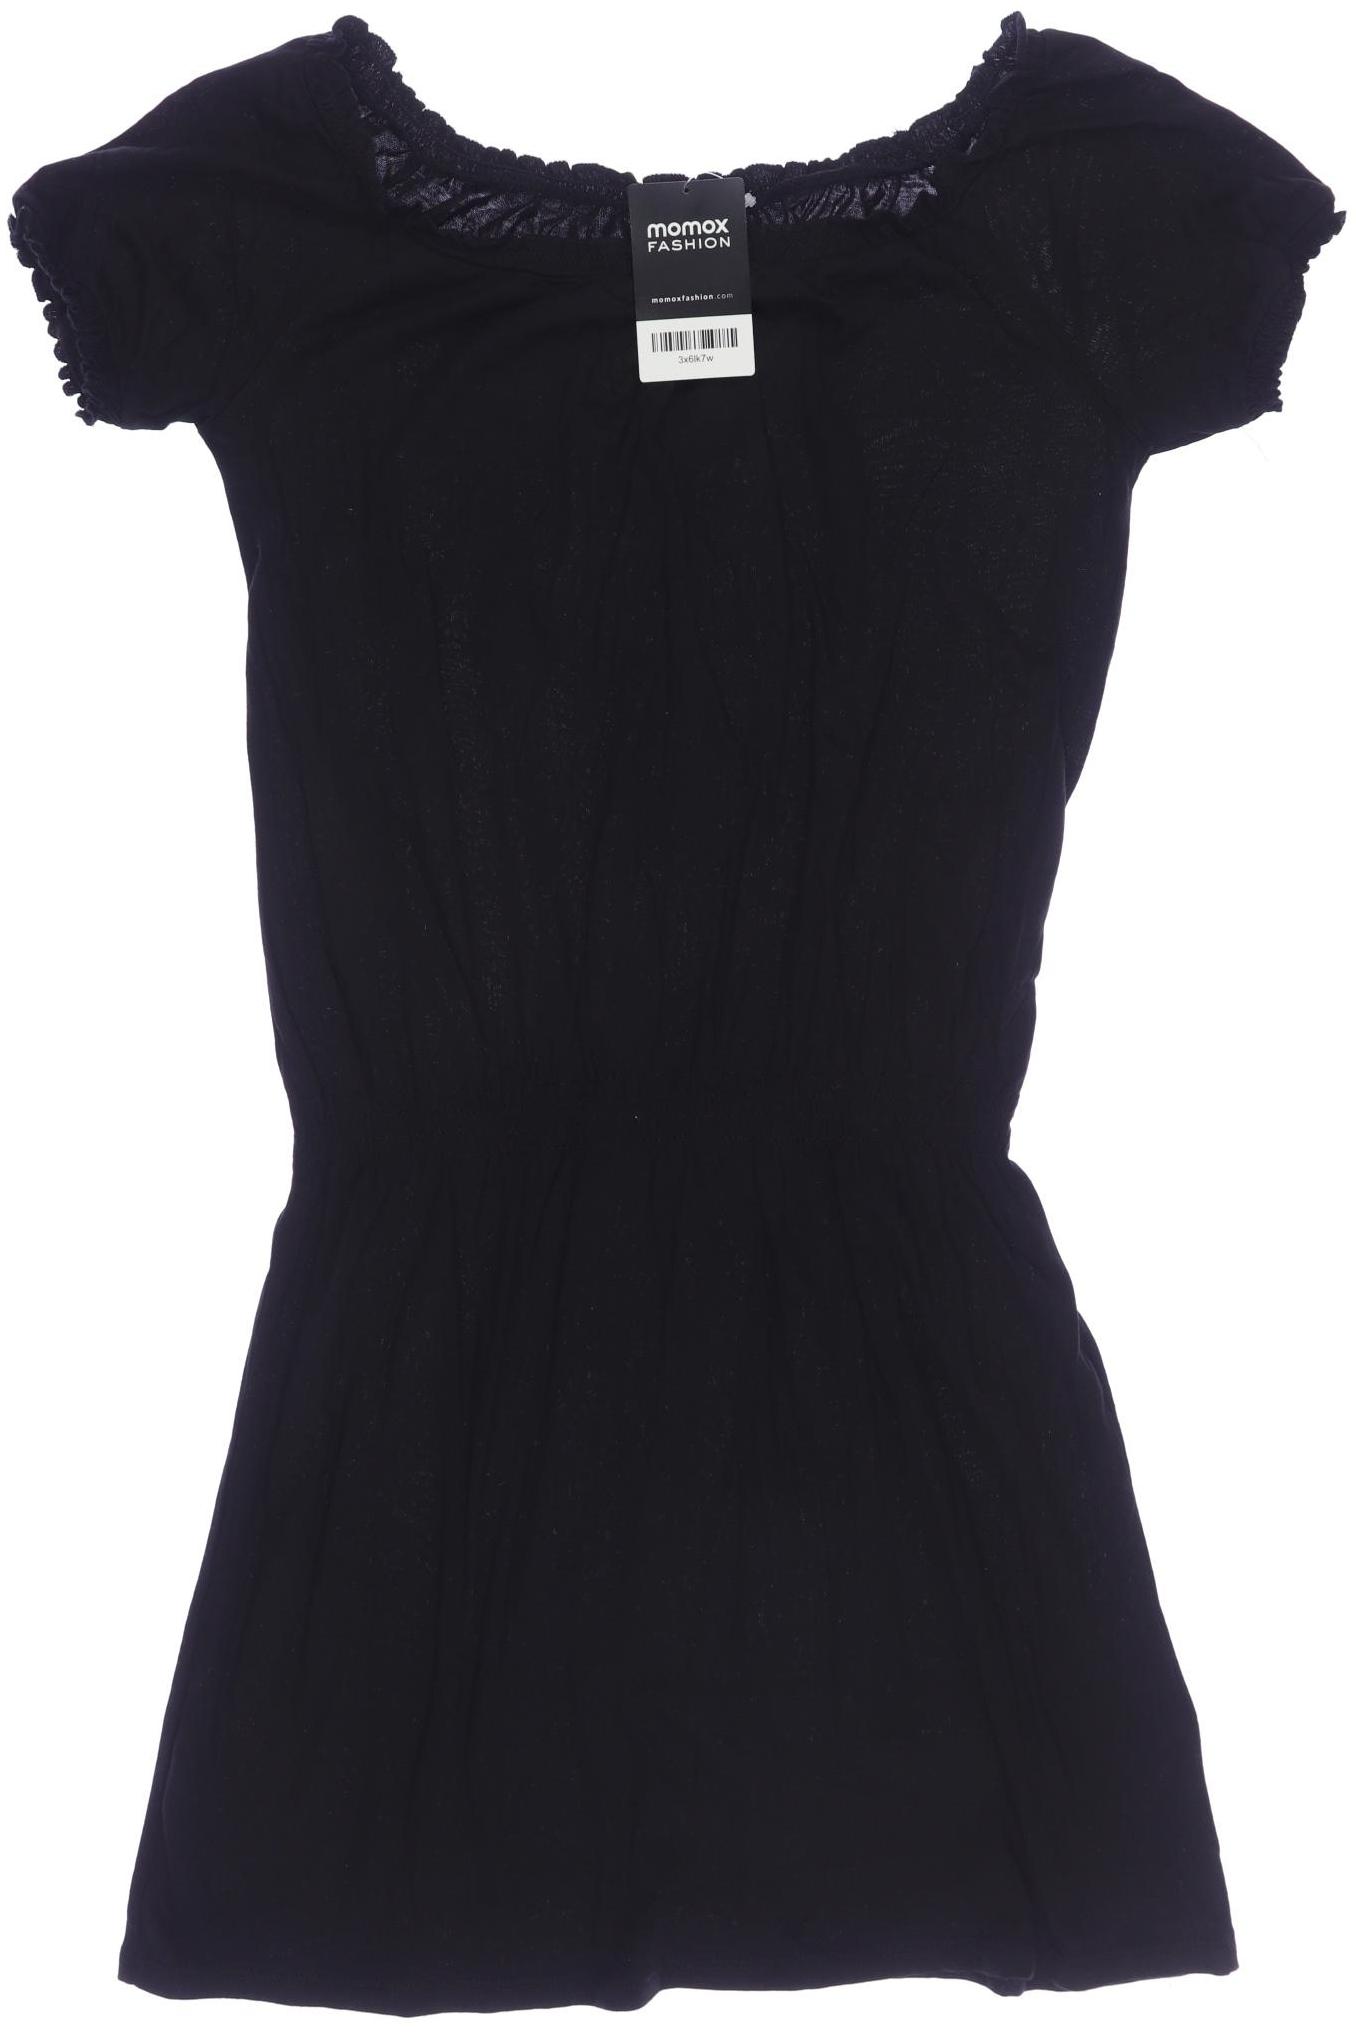 H&M Damen Kleid, schwarz, Gr. 170 von H&M